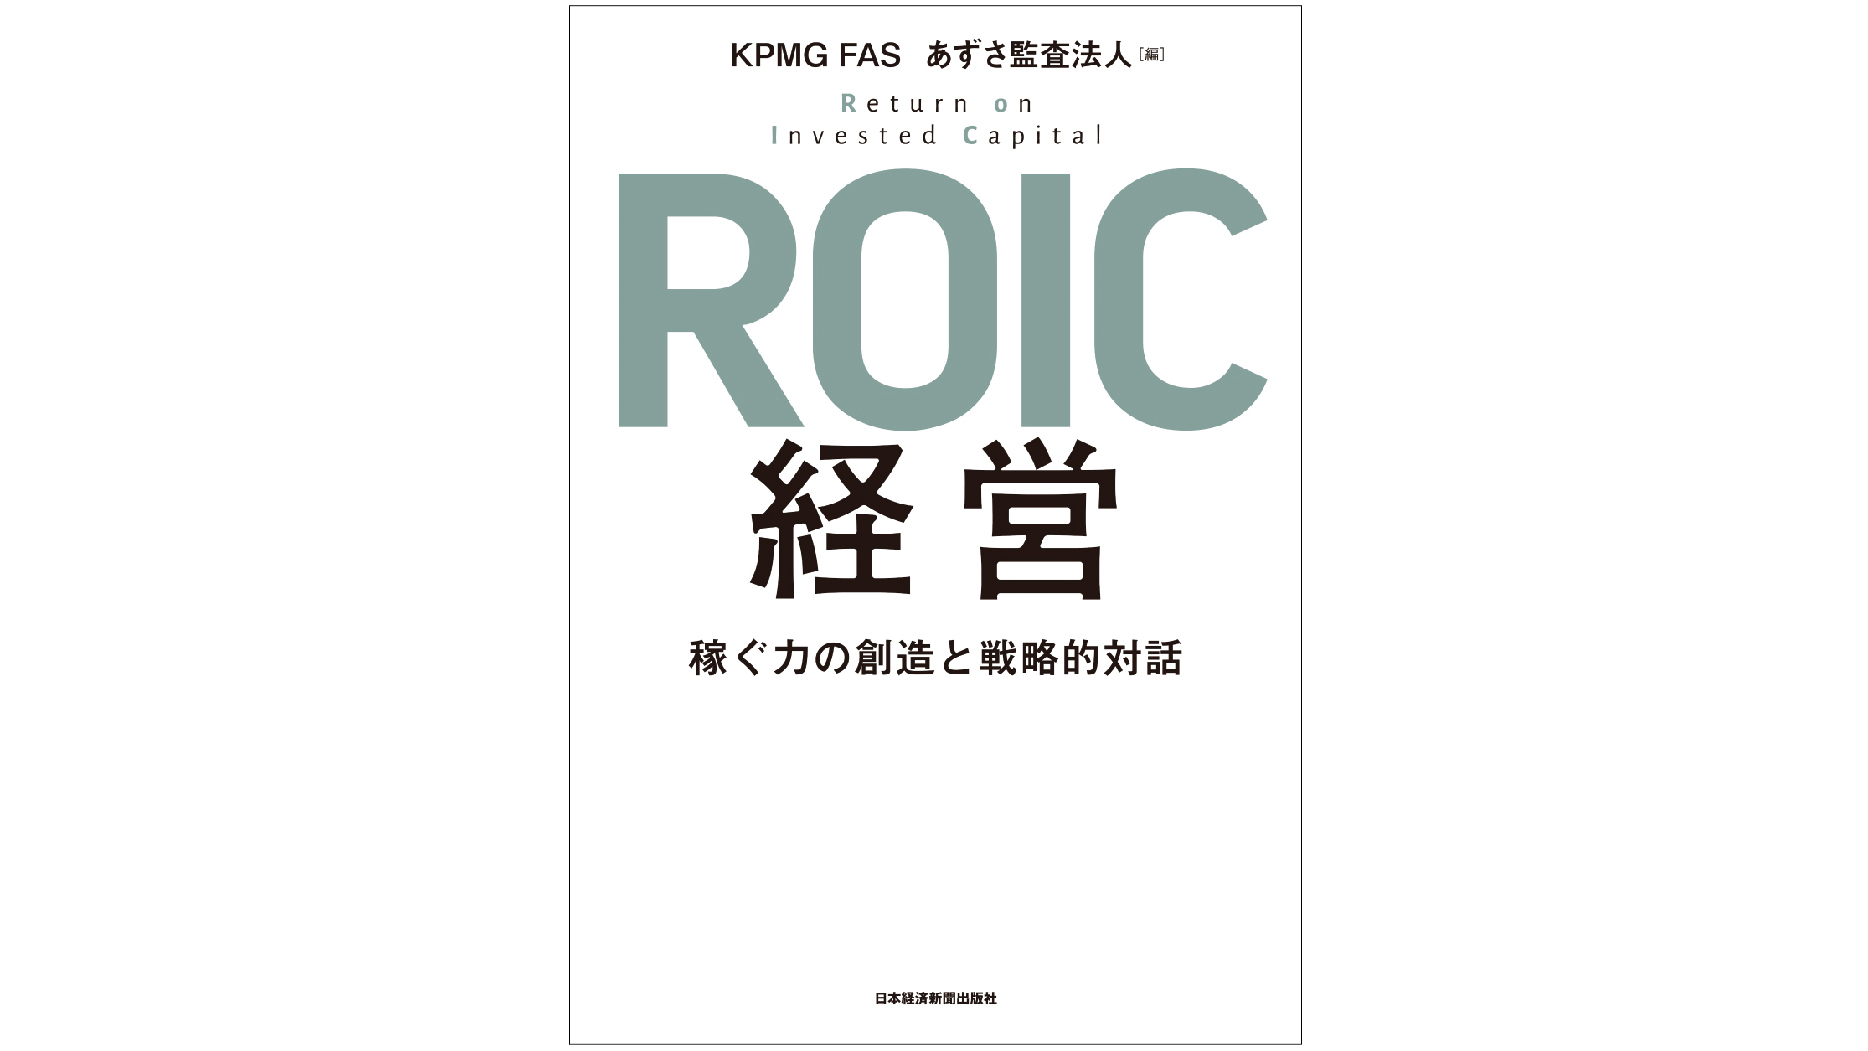 資本コストを意識した経営を――『ROIC経営』 稼ぐ力の創造と戦略的対話